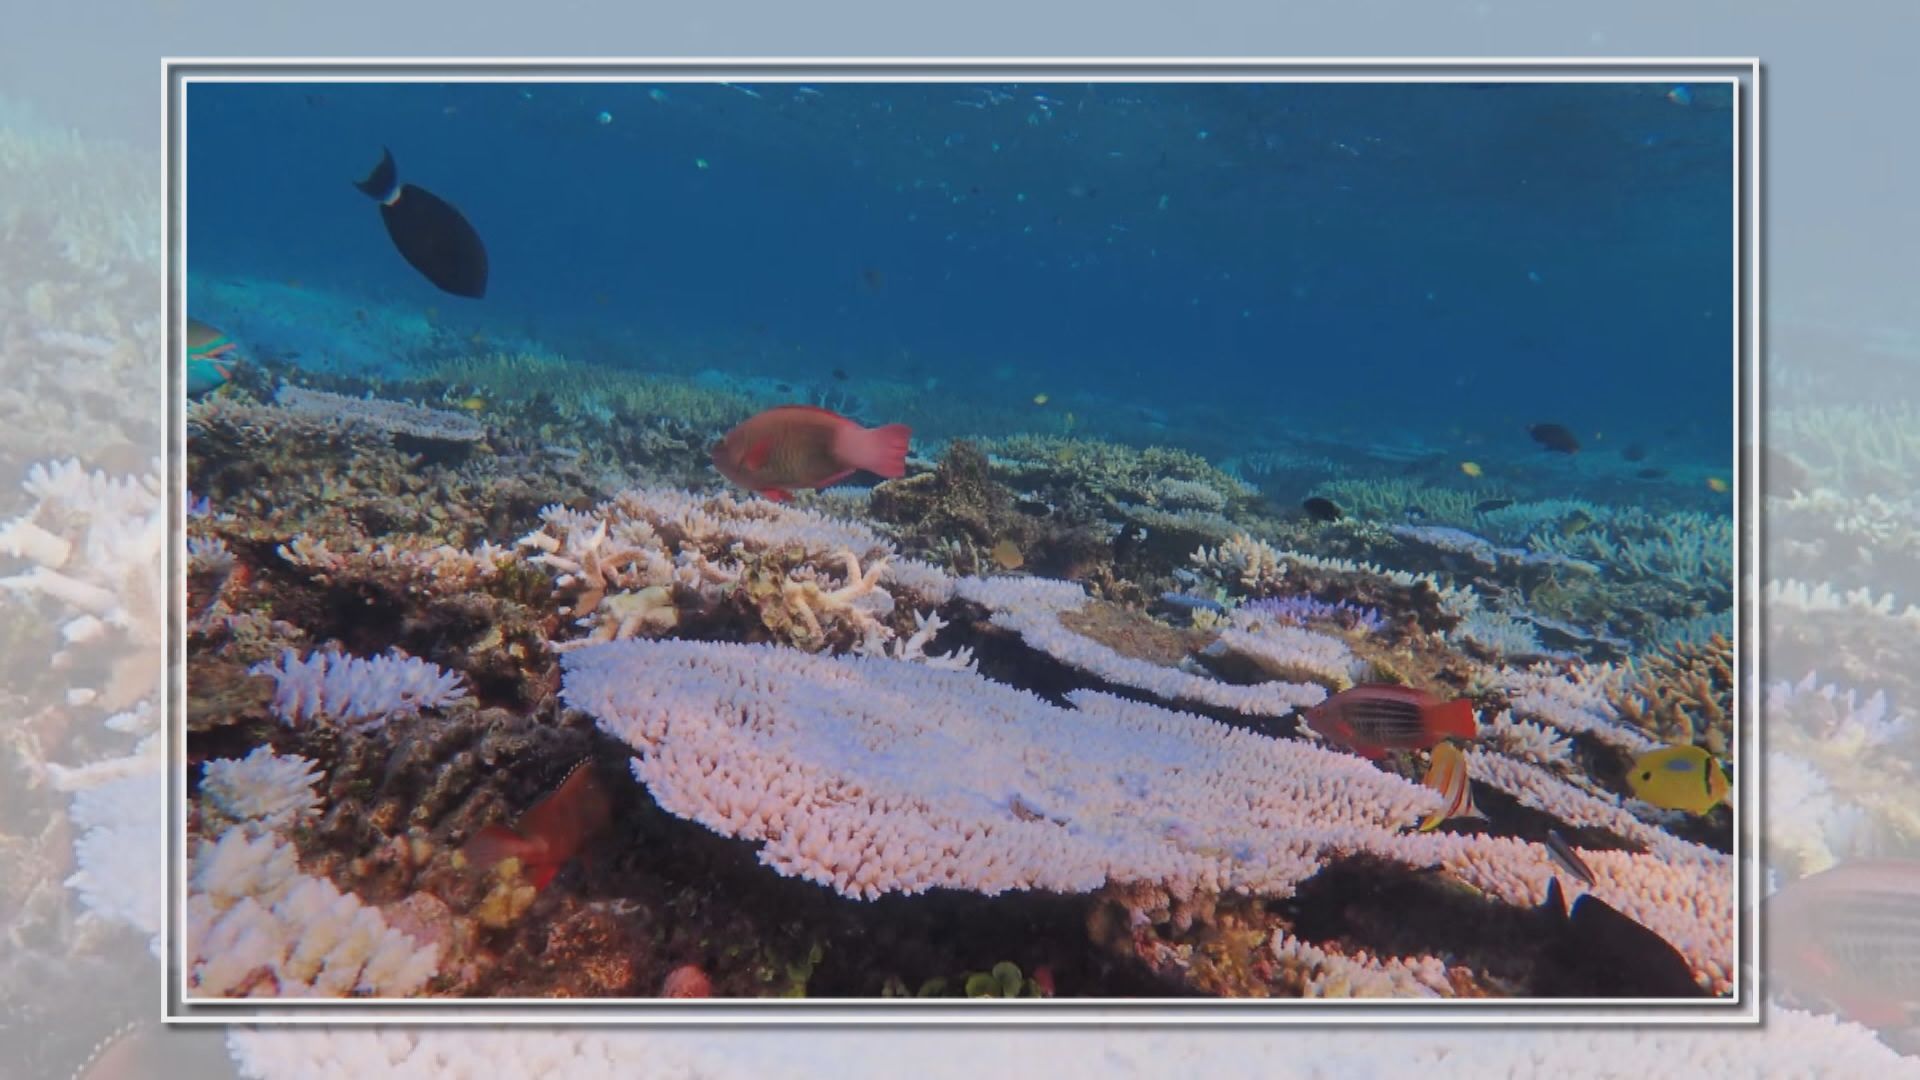 【環球薈報】澳洲大堡礁正經歷大規模白化 八年來第五次